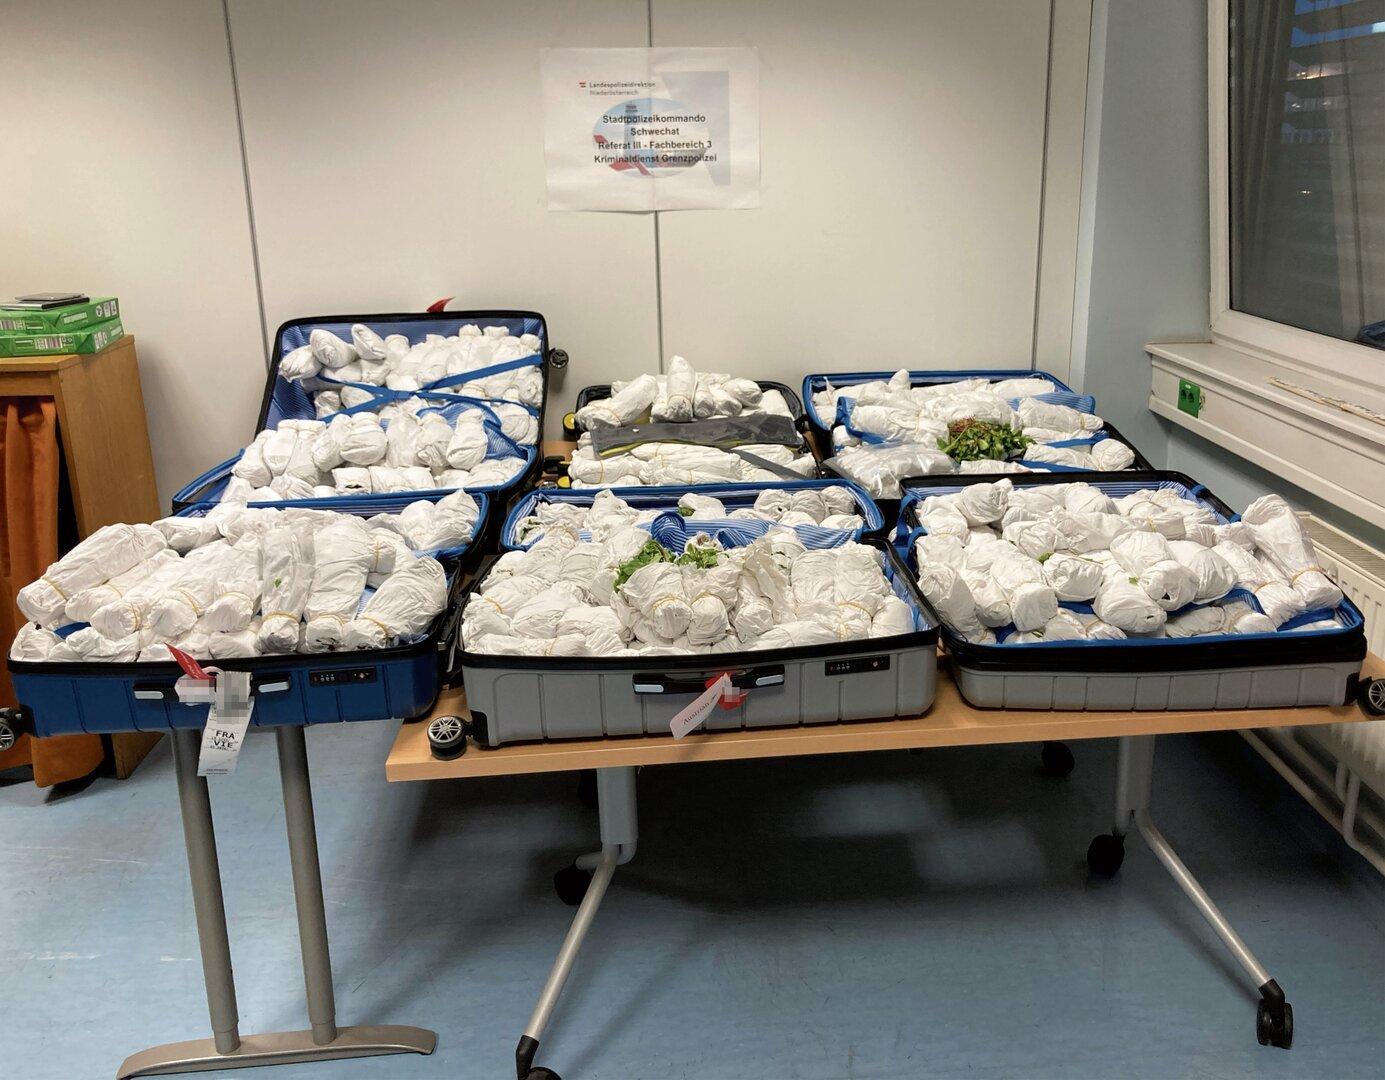 Flughafen Schwechat: Männer hatten 120 Kilo Drogen im Gepäck